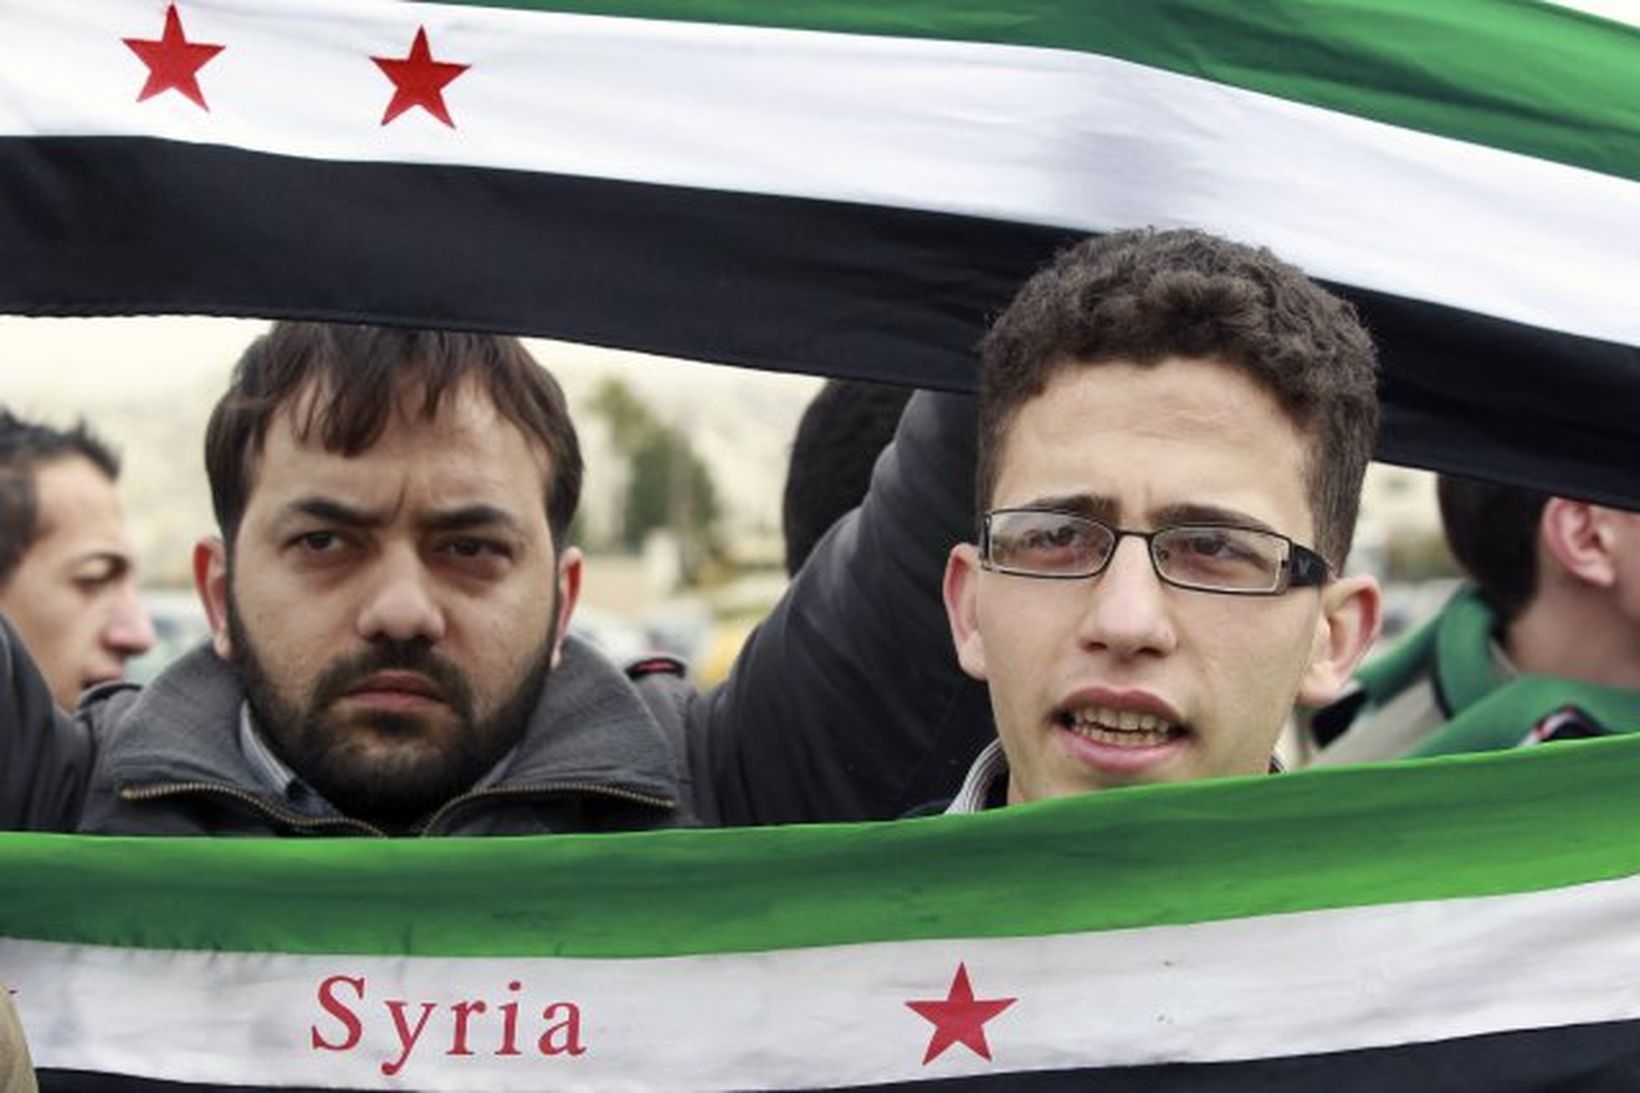 Sýrlendingar mótmæla Bashar Al-Assad forseta landsins.